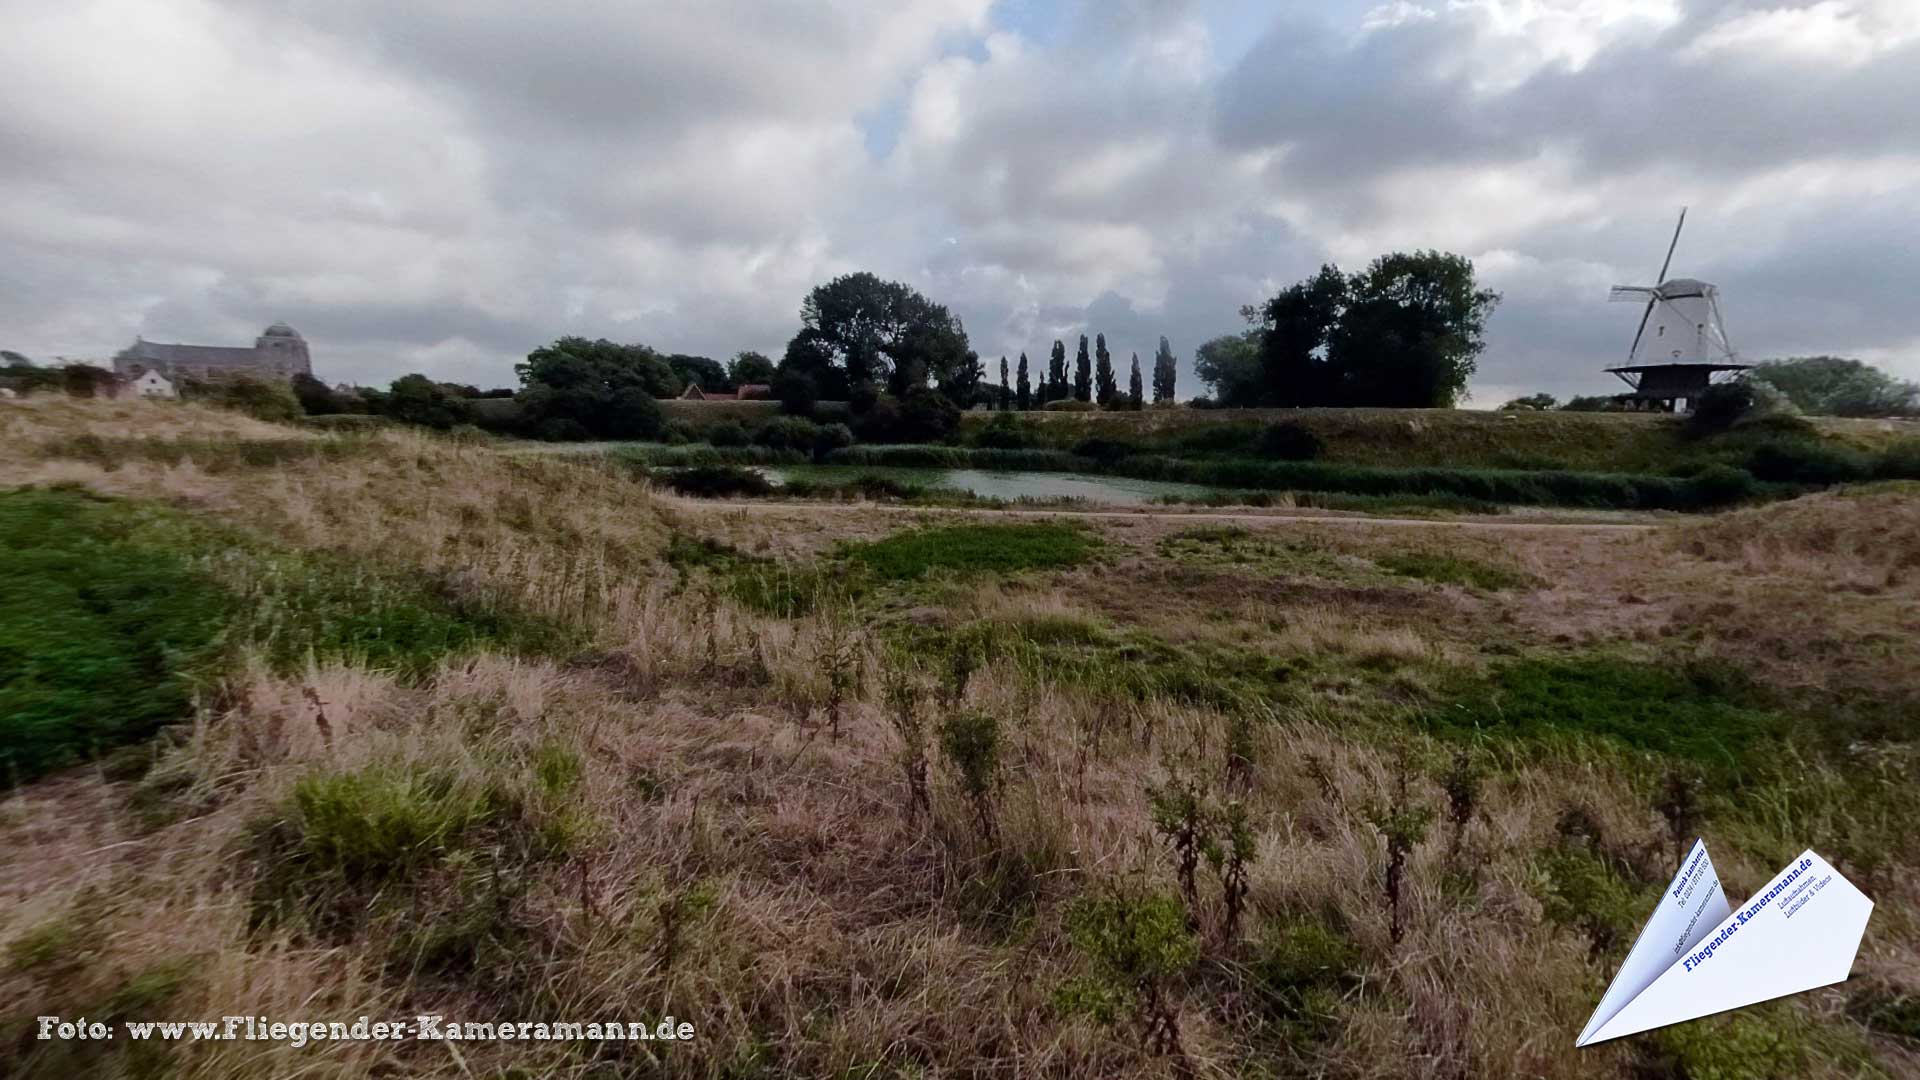 Korenmolen "De Koe" in Veere (NL) - 360°-Panorama